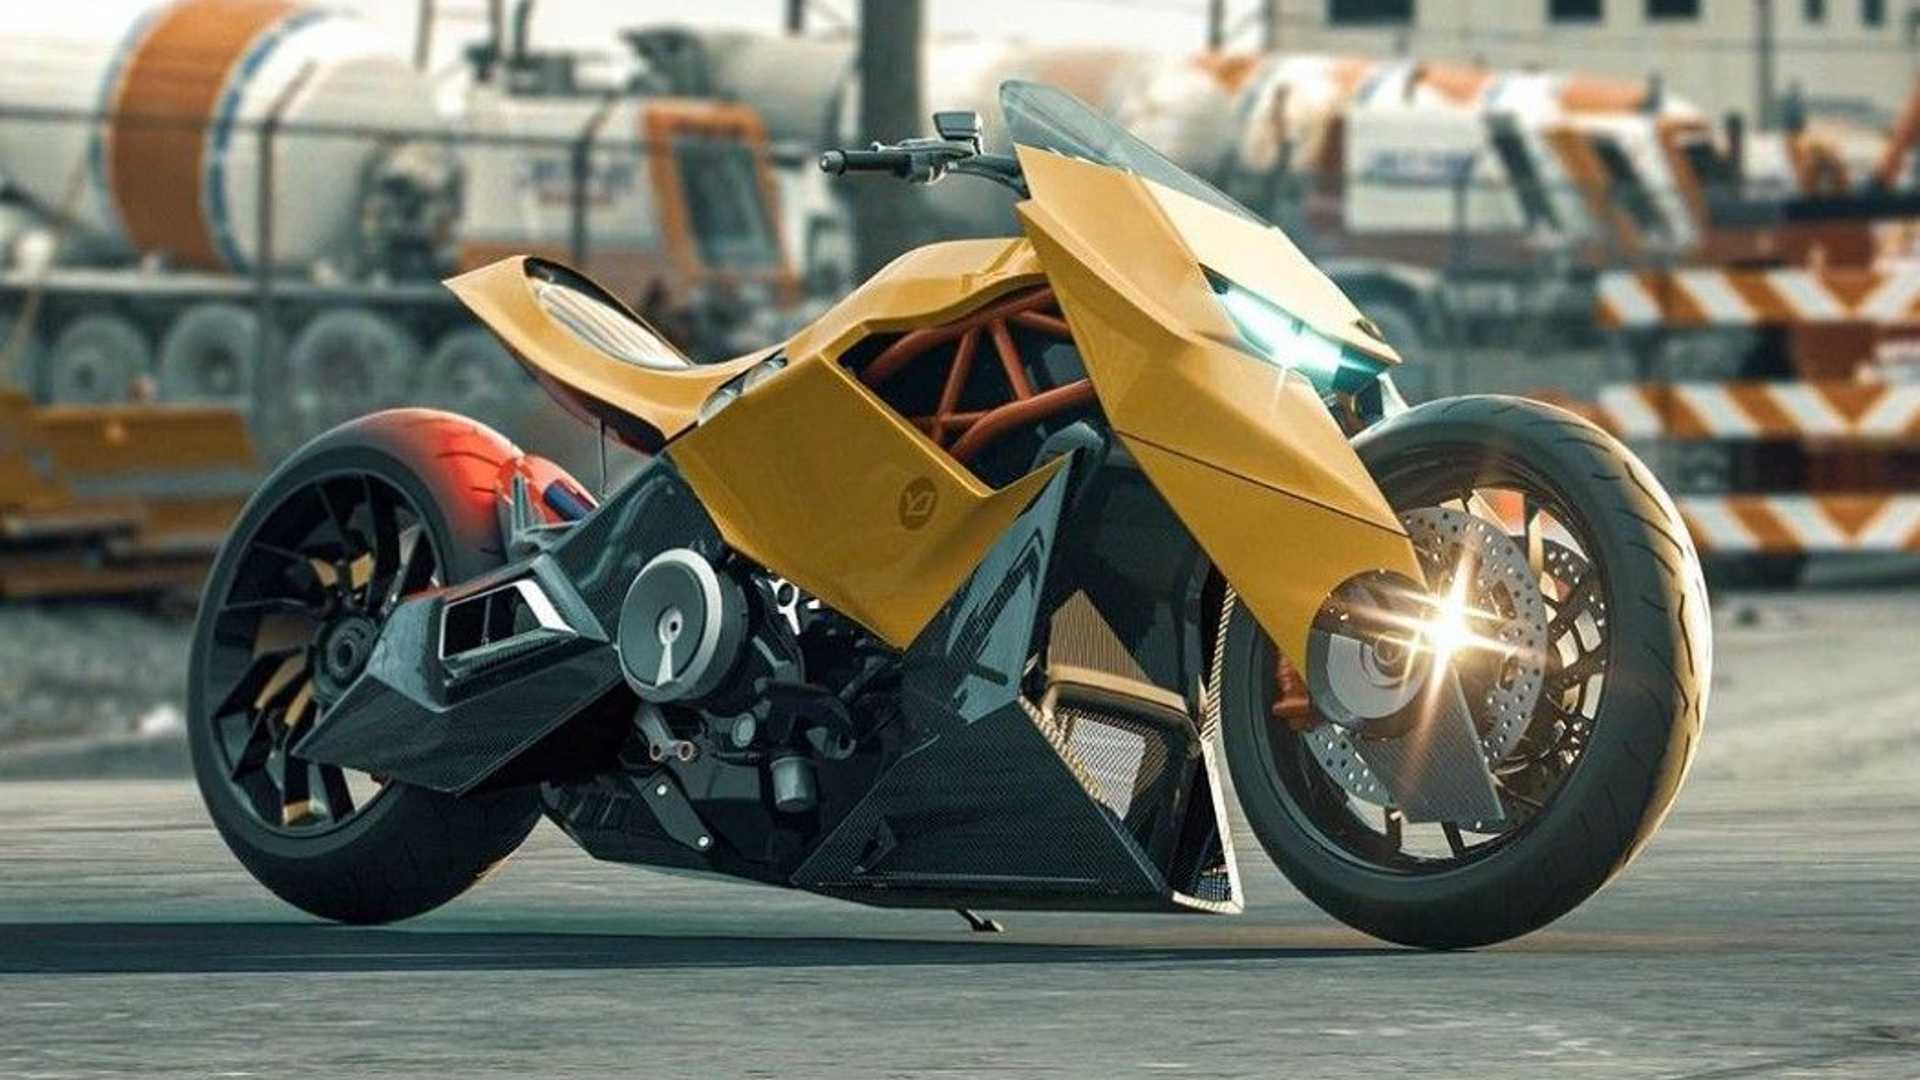 Ist das die kommende Ducati Diavel Lamborghini?
- auch in der MOTORRAD NACHRICHTEN APP